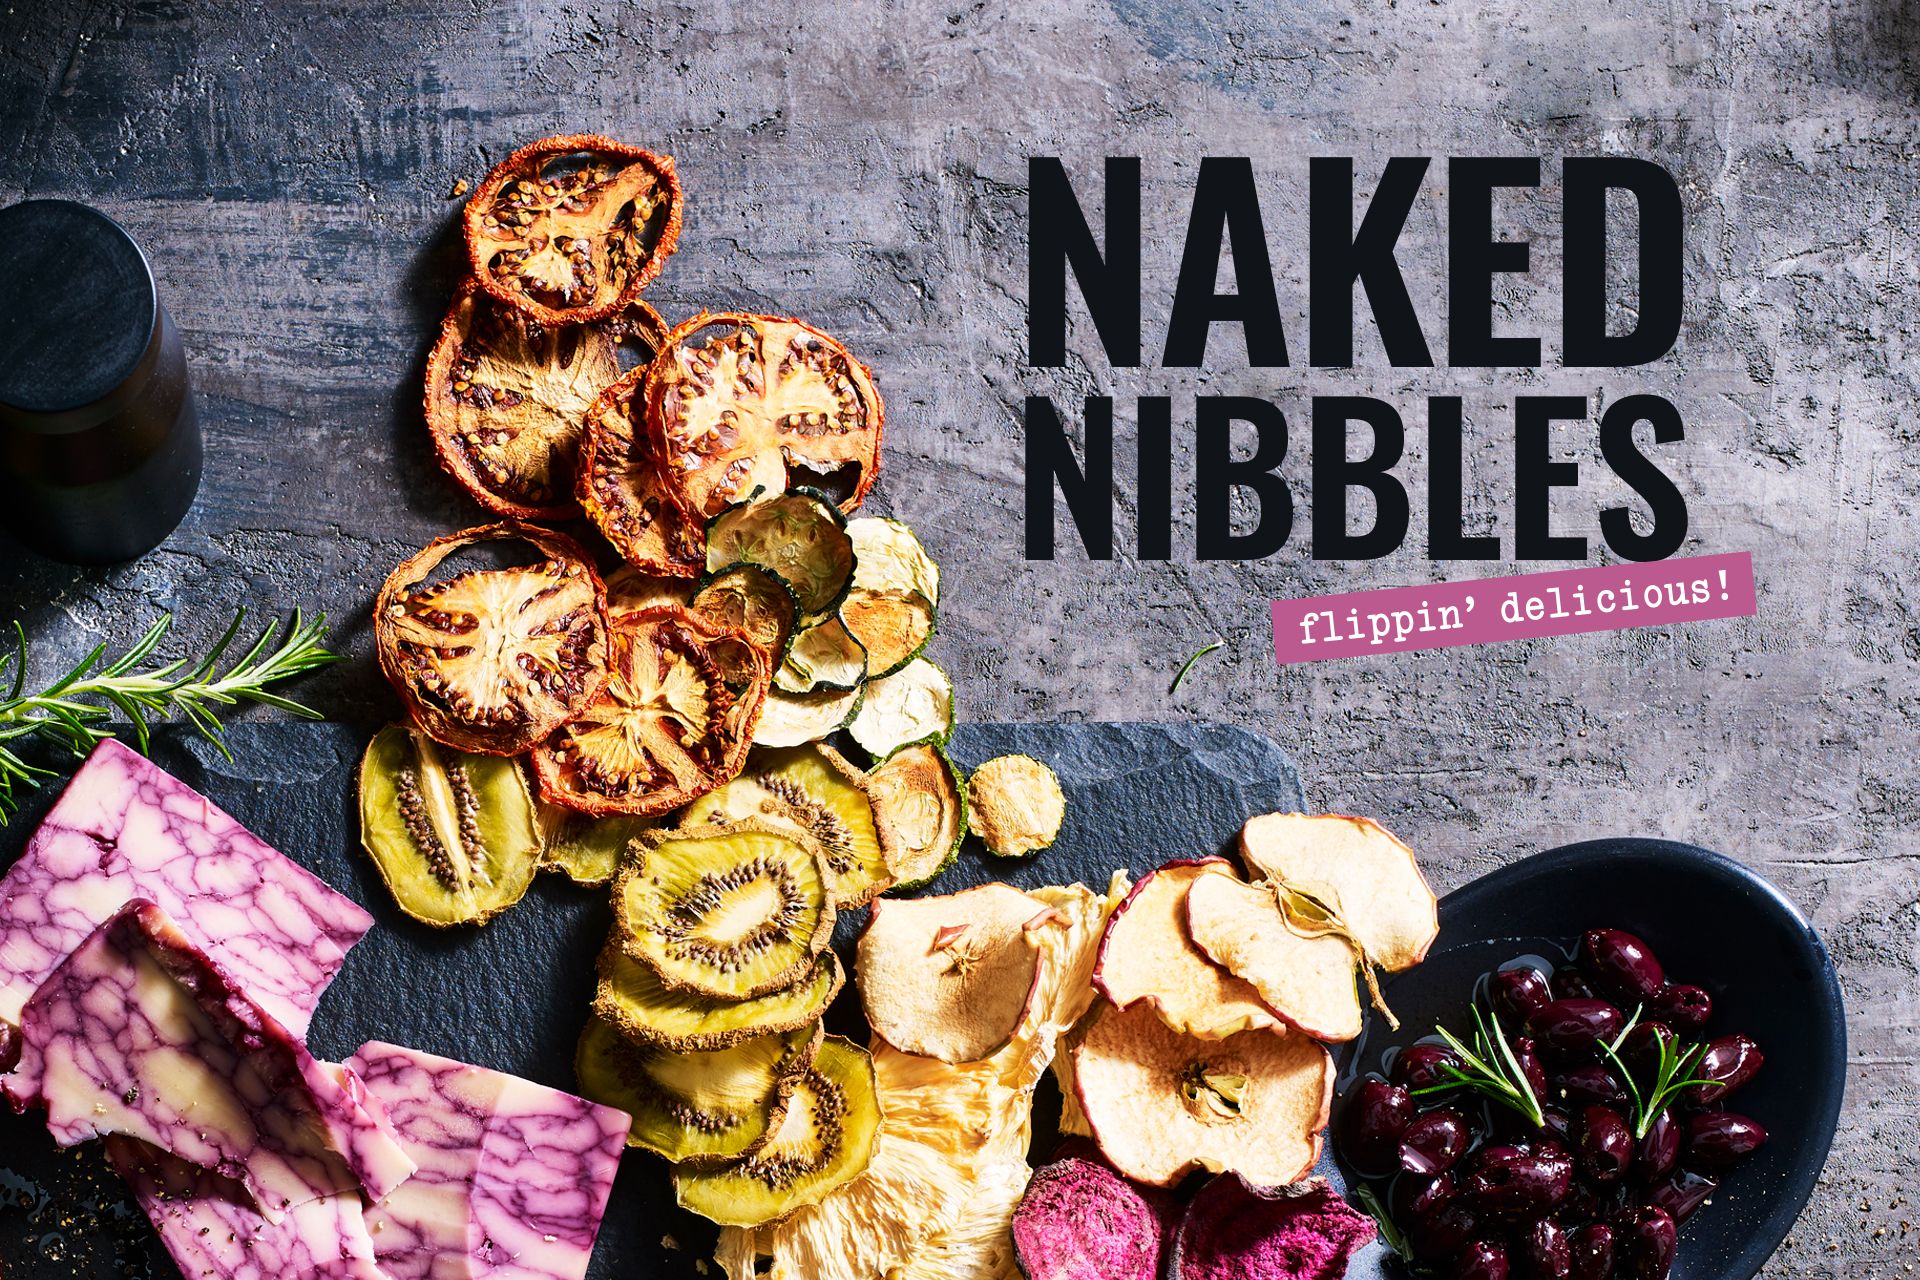 Nudus Naked Nibbles Branding